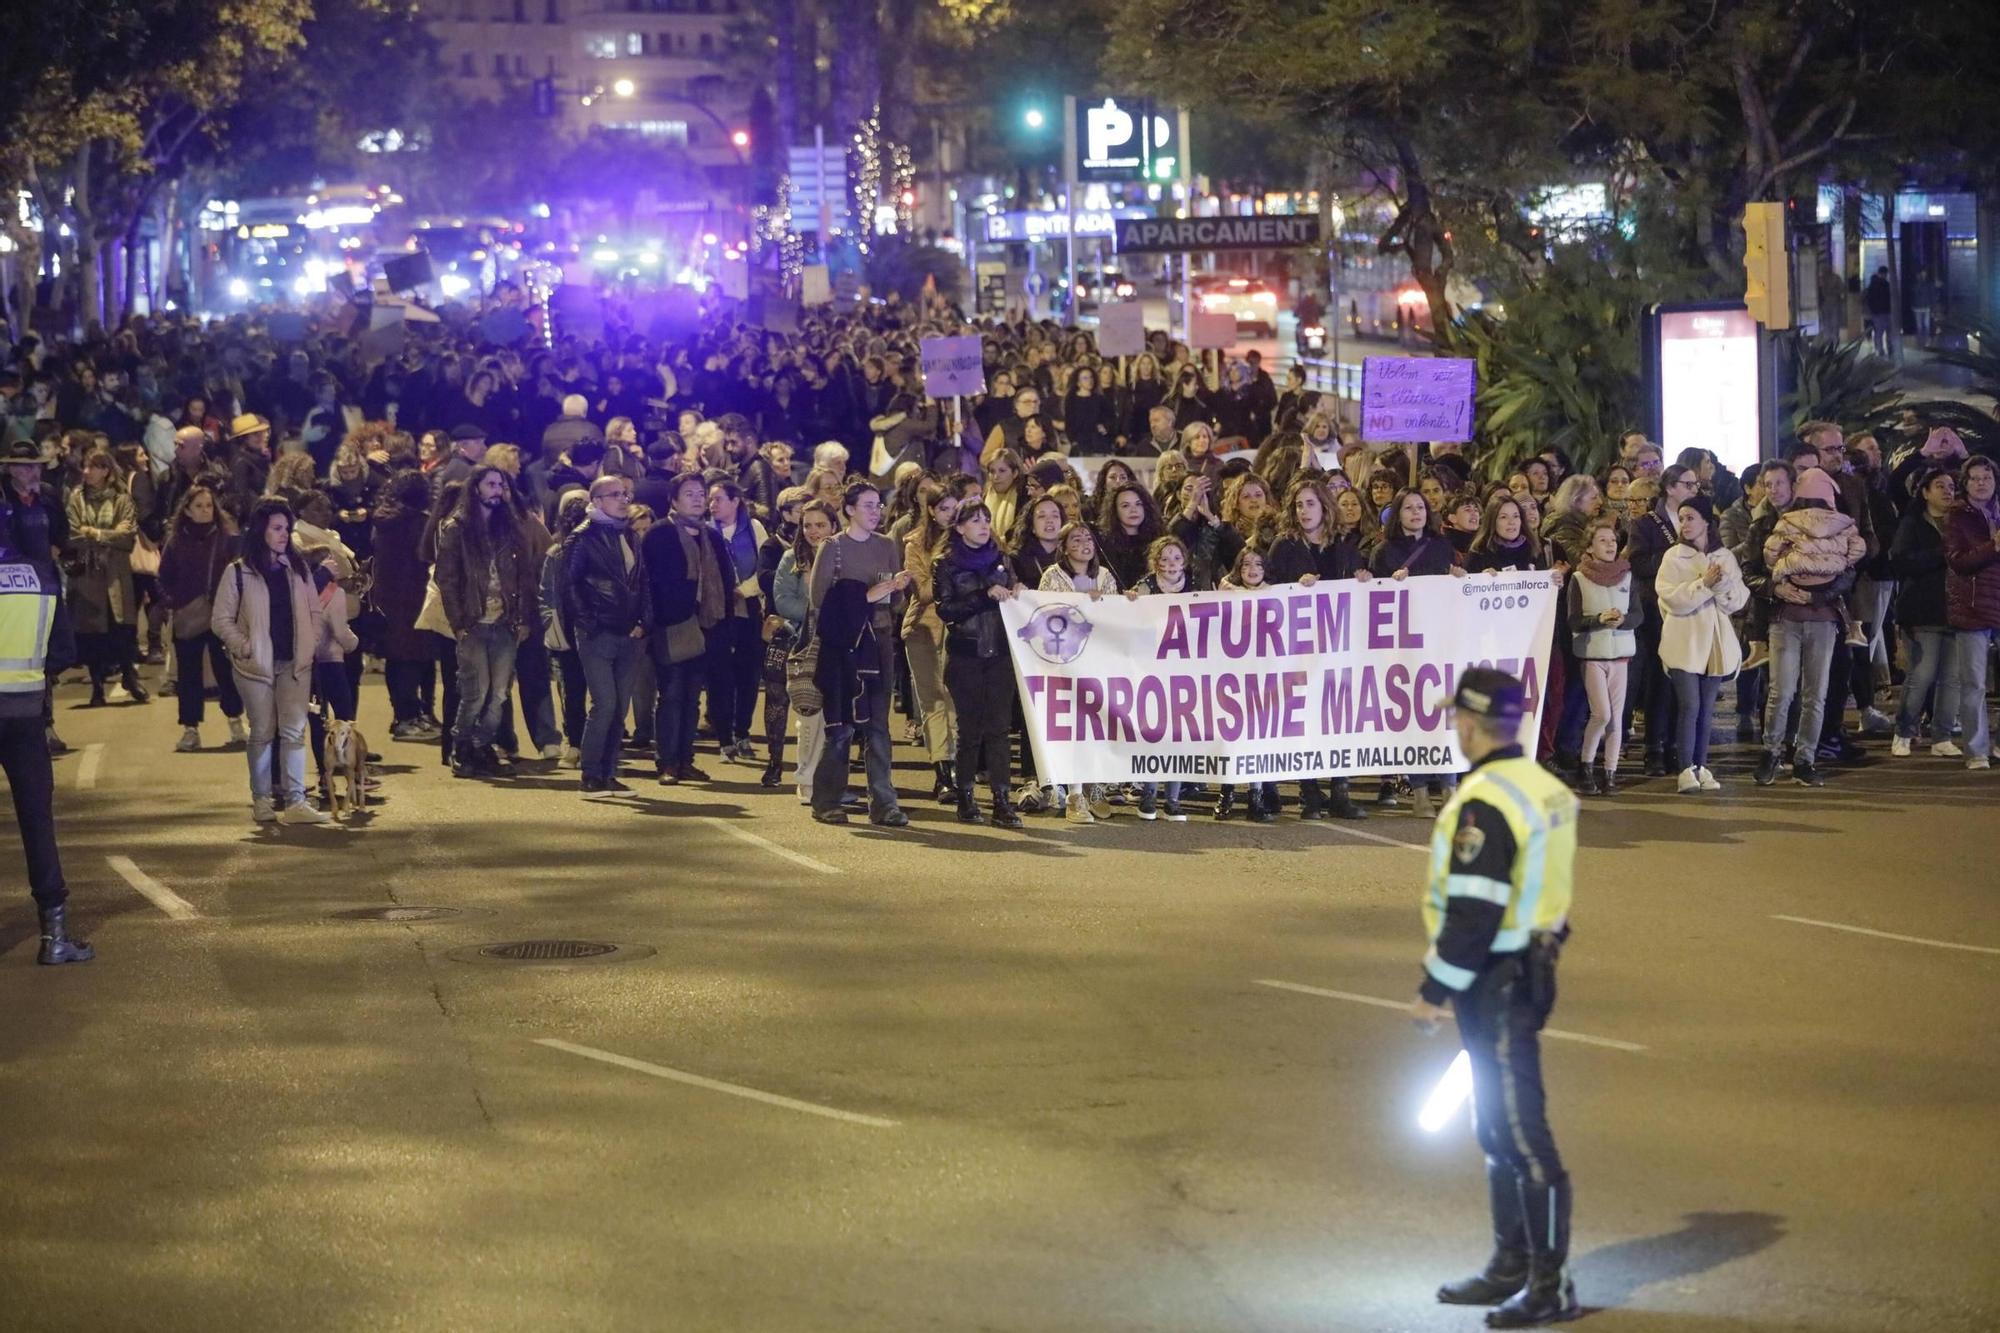 Internationaler Tag gegen Gewalt an Frauen - So verlief die größte Demonstration auf Mallorca